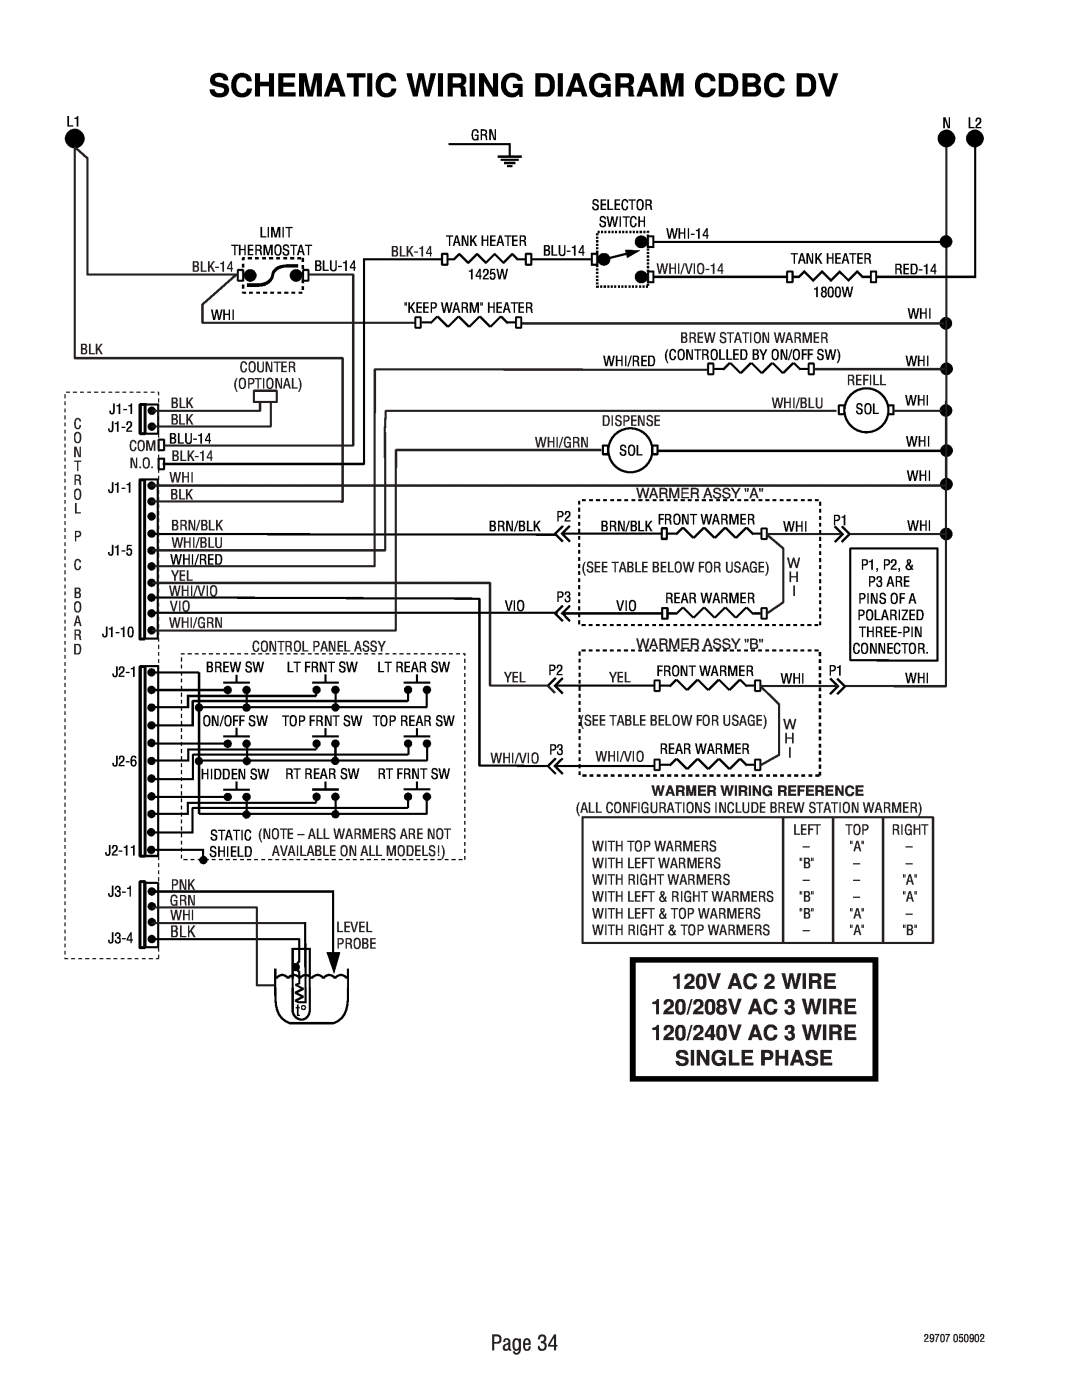 Bunn CDBCF-MV, CDBCF-DV, CDBC APS-DV Schematic Wiring Diagram Cdbc Dv, 120V AC 2 WIRE, N L2, Warmer Wiring Reference 